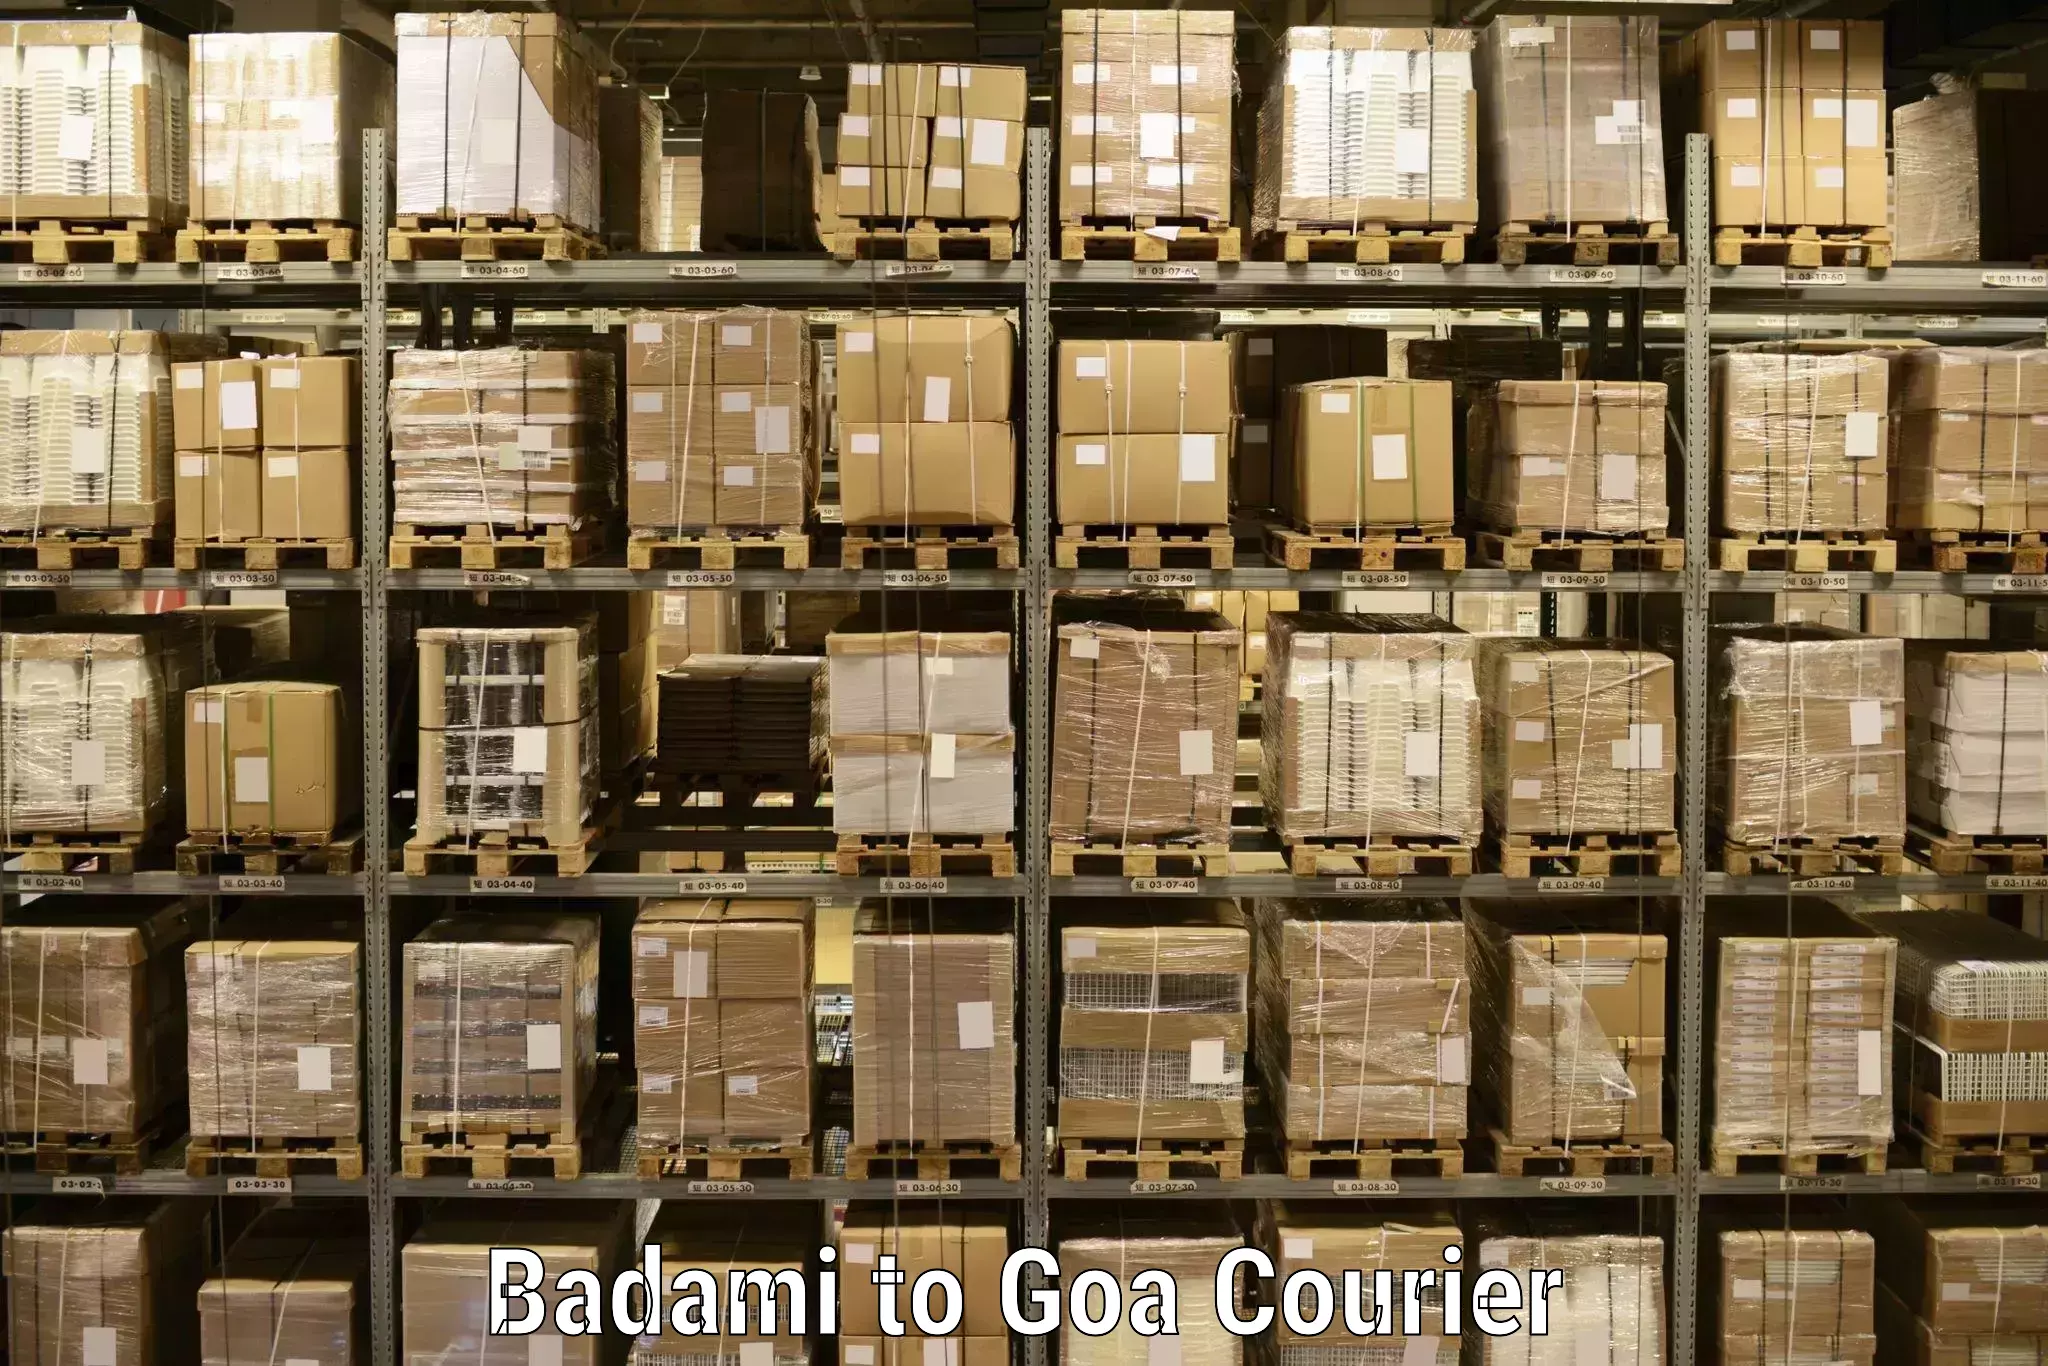 Global logistics network Badami to Panjim